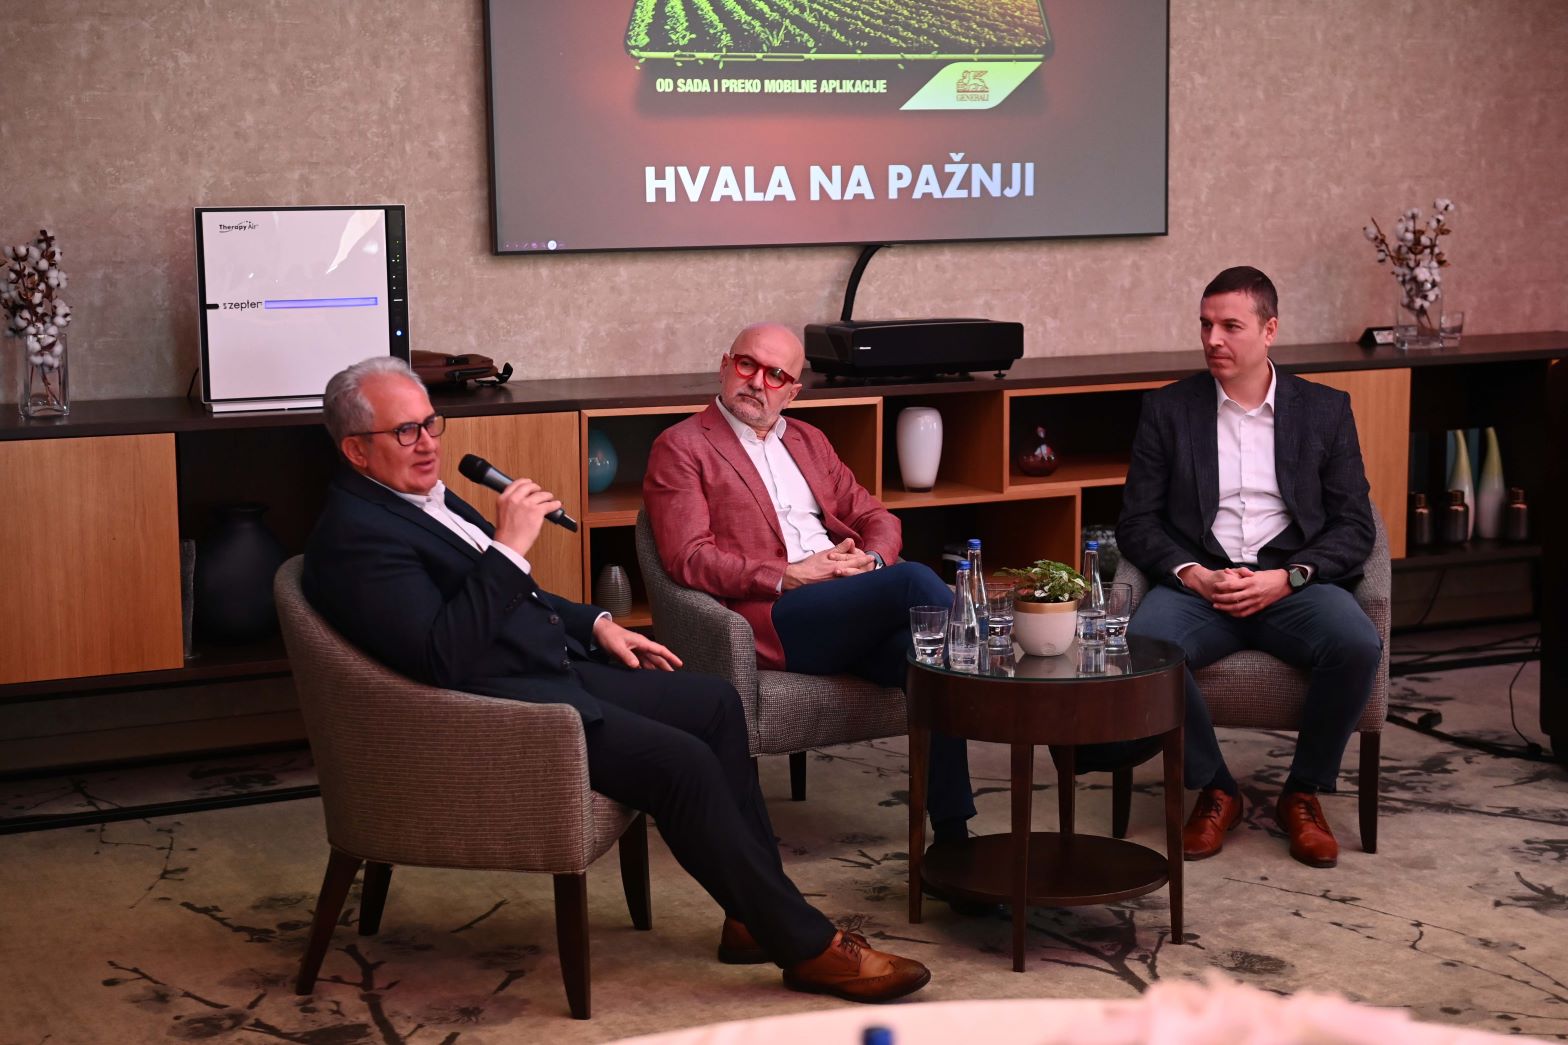 Poljoprivrednici u Srbiji od sada mogu da osiguraju useve i plodove od svoje kuće ili sa njive: Veselin Danilovac, Vladimir Crnojević i Nemanja Beljanski